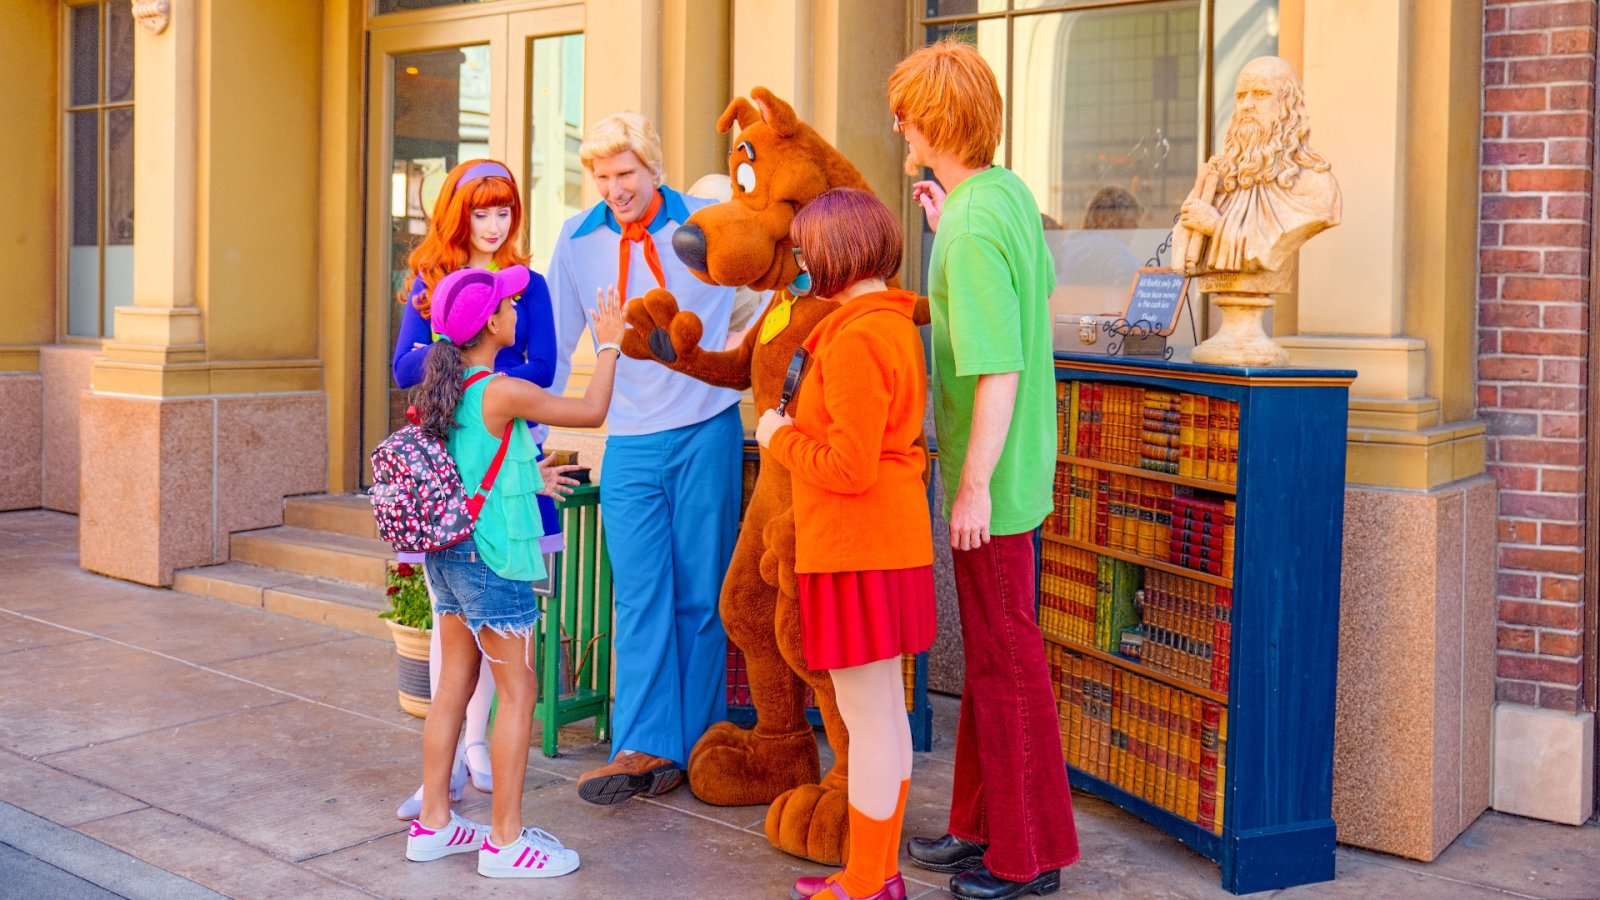 L'ultimo spettacolo della HBO che attinge al mondo di Scooby-Doo ha fatto parlare gli spettatori, ma perché?